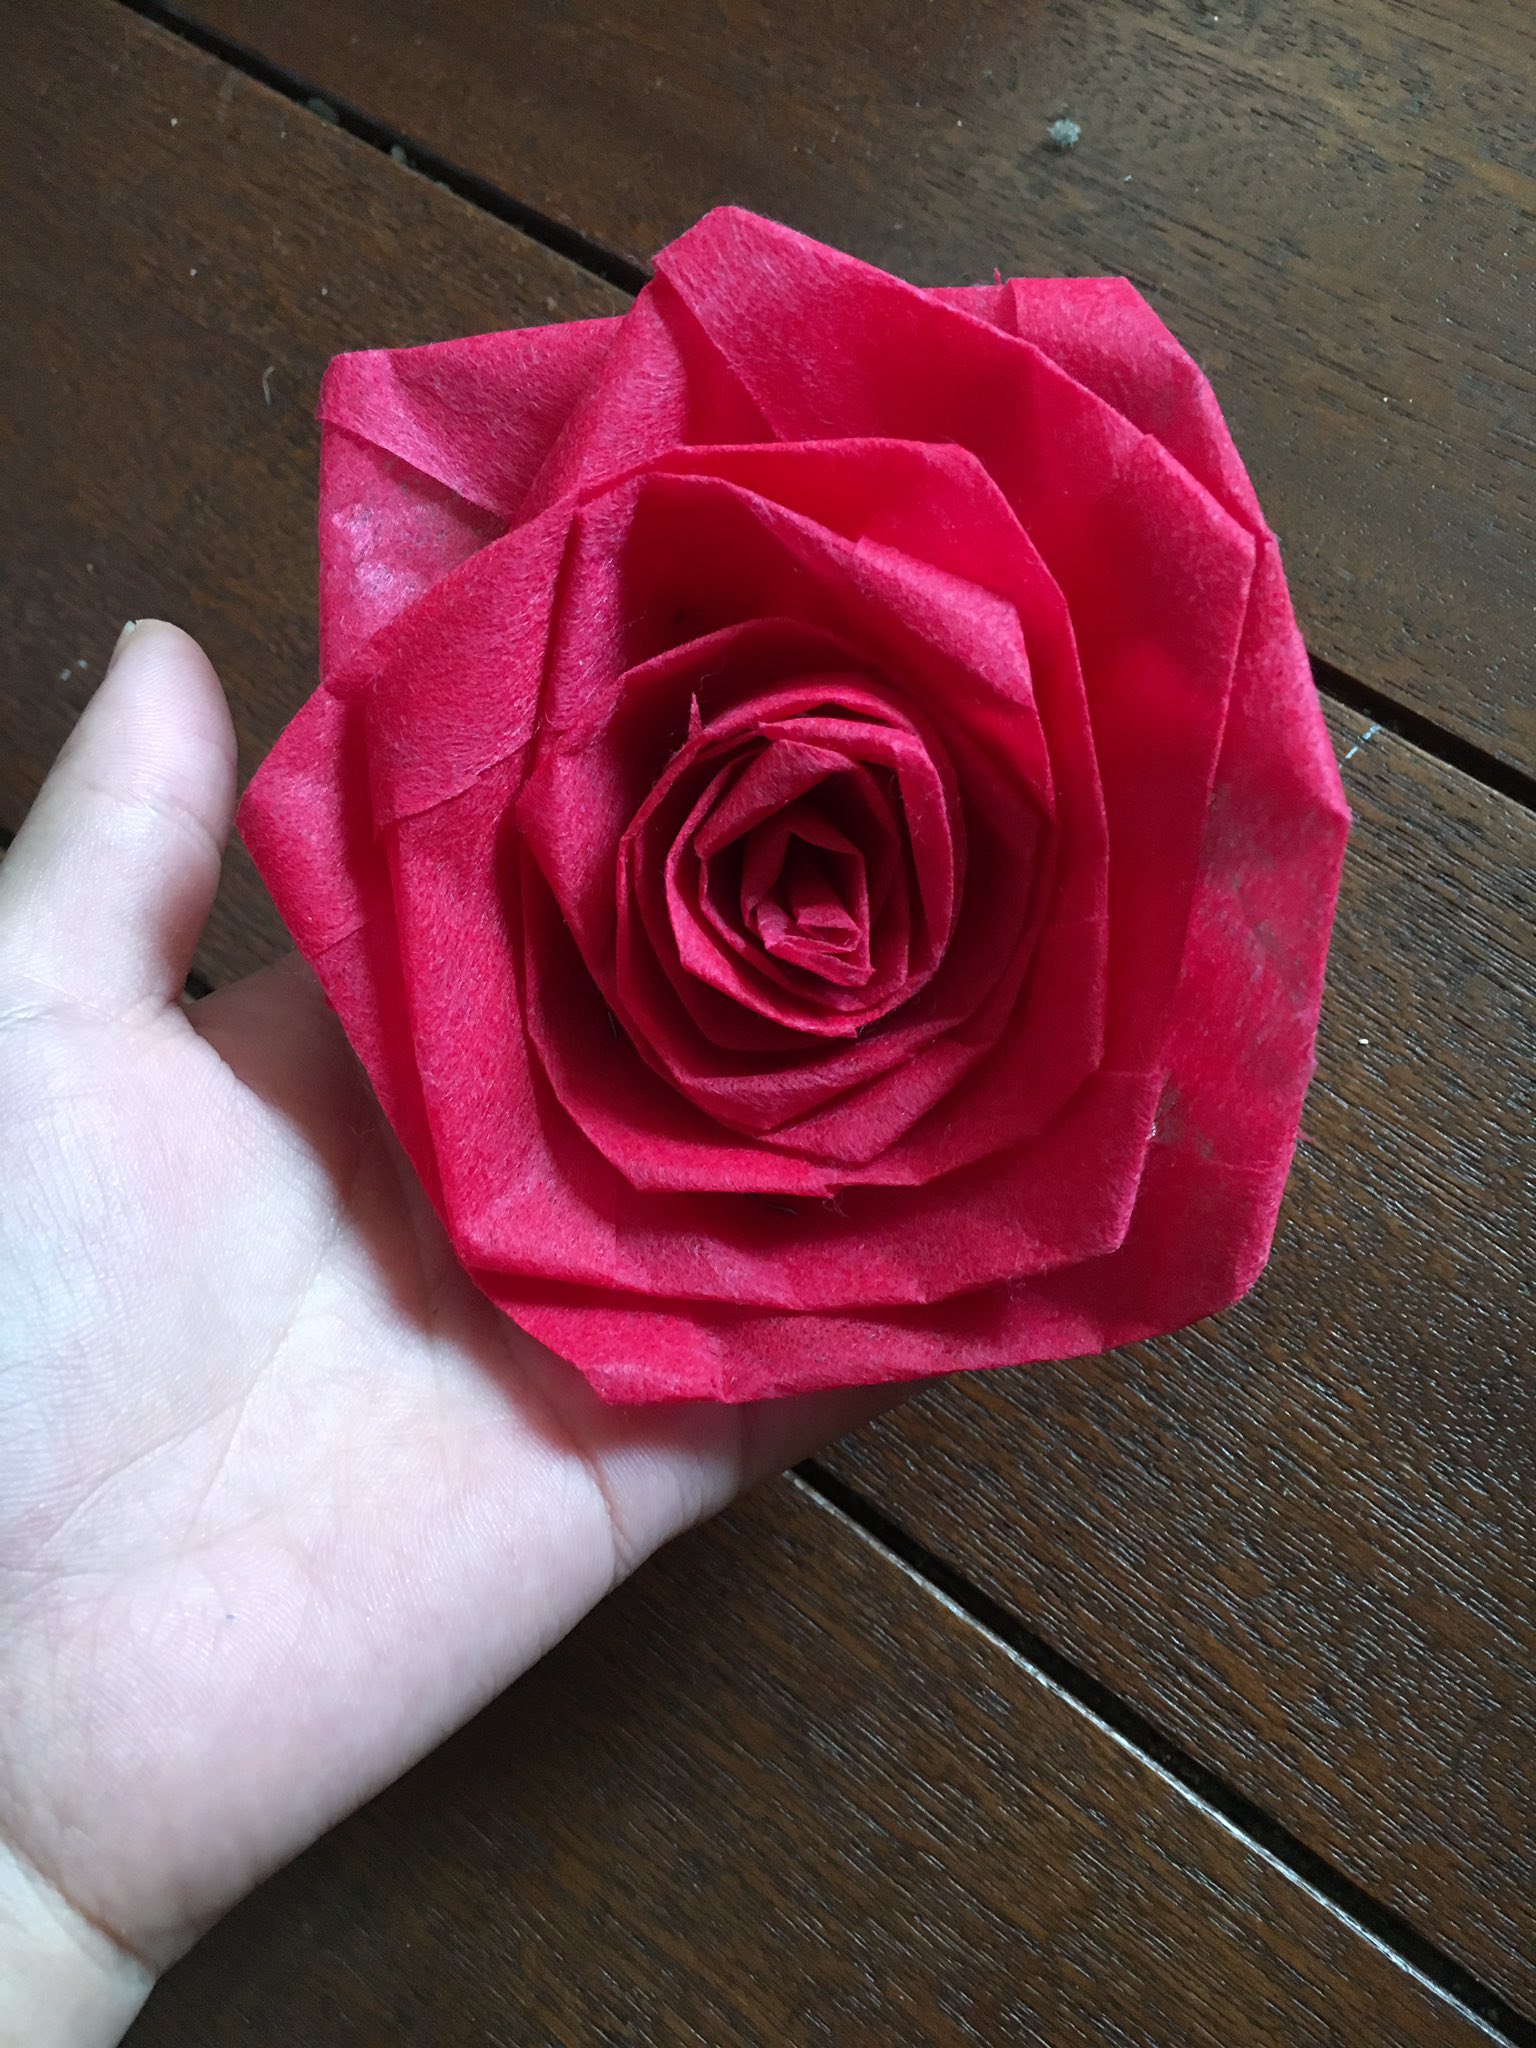 ダンデリオンlarp 身内会やるよ ヾ Oﾟwﾟo ﾉﾞ 不織布アレンジ 薔薇の作り方 この薔薇も 不織布で作ったものです 長いリボン状にした不織布を折ってまとめていくだけで簡単に作れます その作り方を後述でご紹介していきましょう T Co